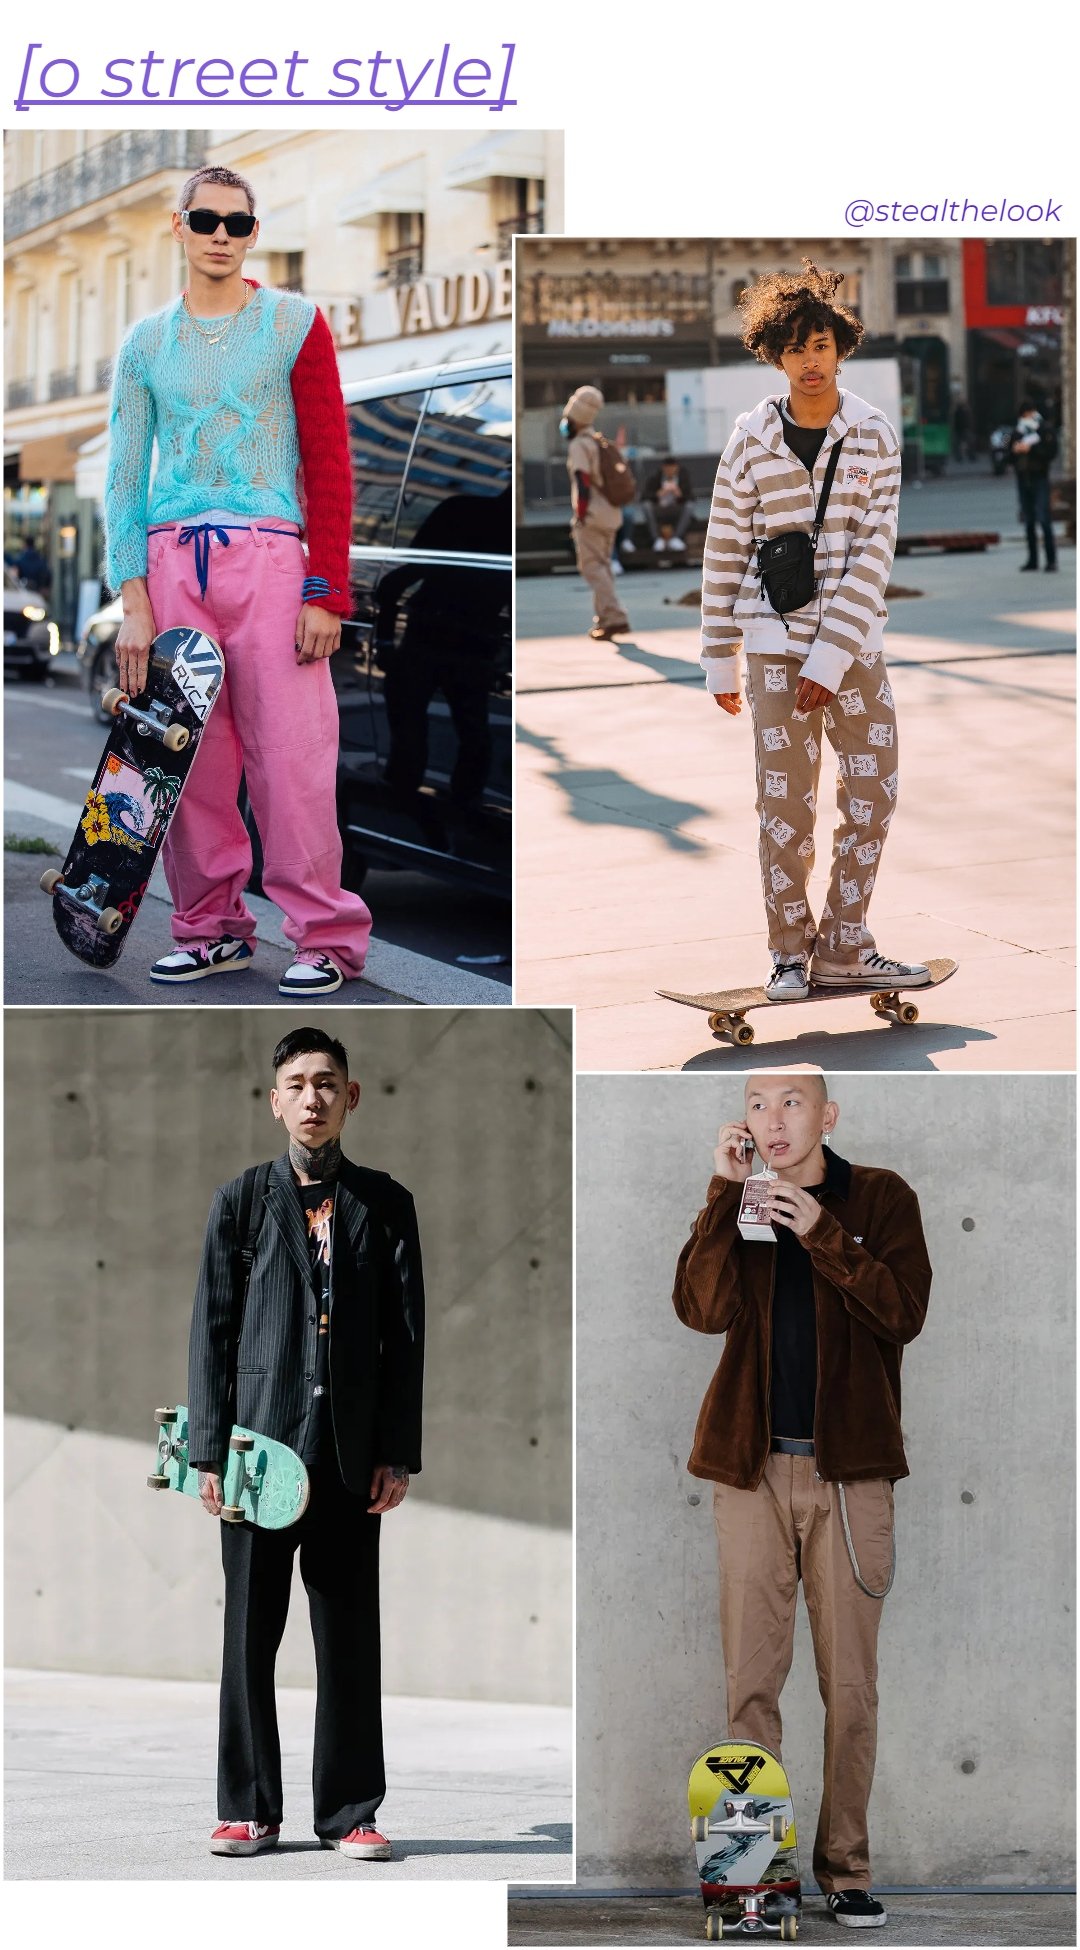 Street Style - roupas diversas - Moda e Skate - inverno - colagem de imagens - https://stealthelook.com.br